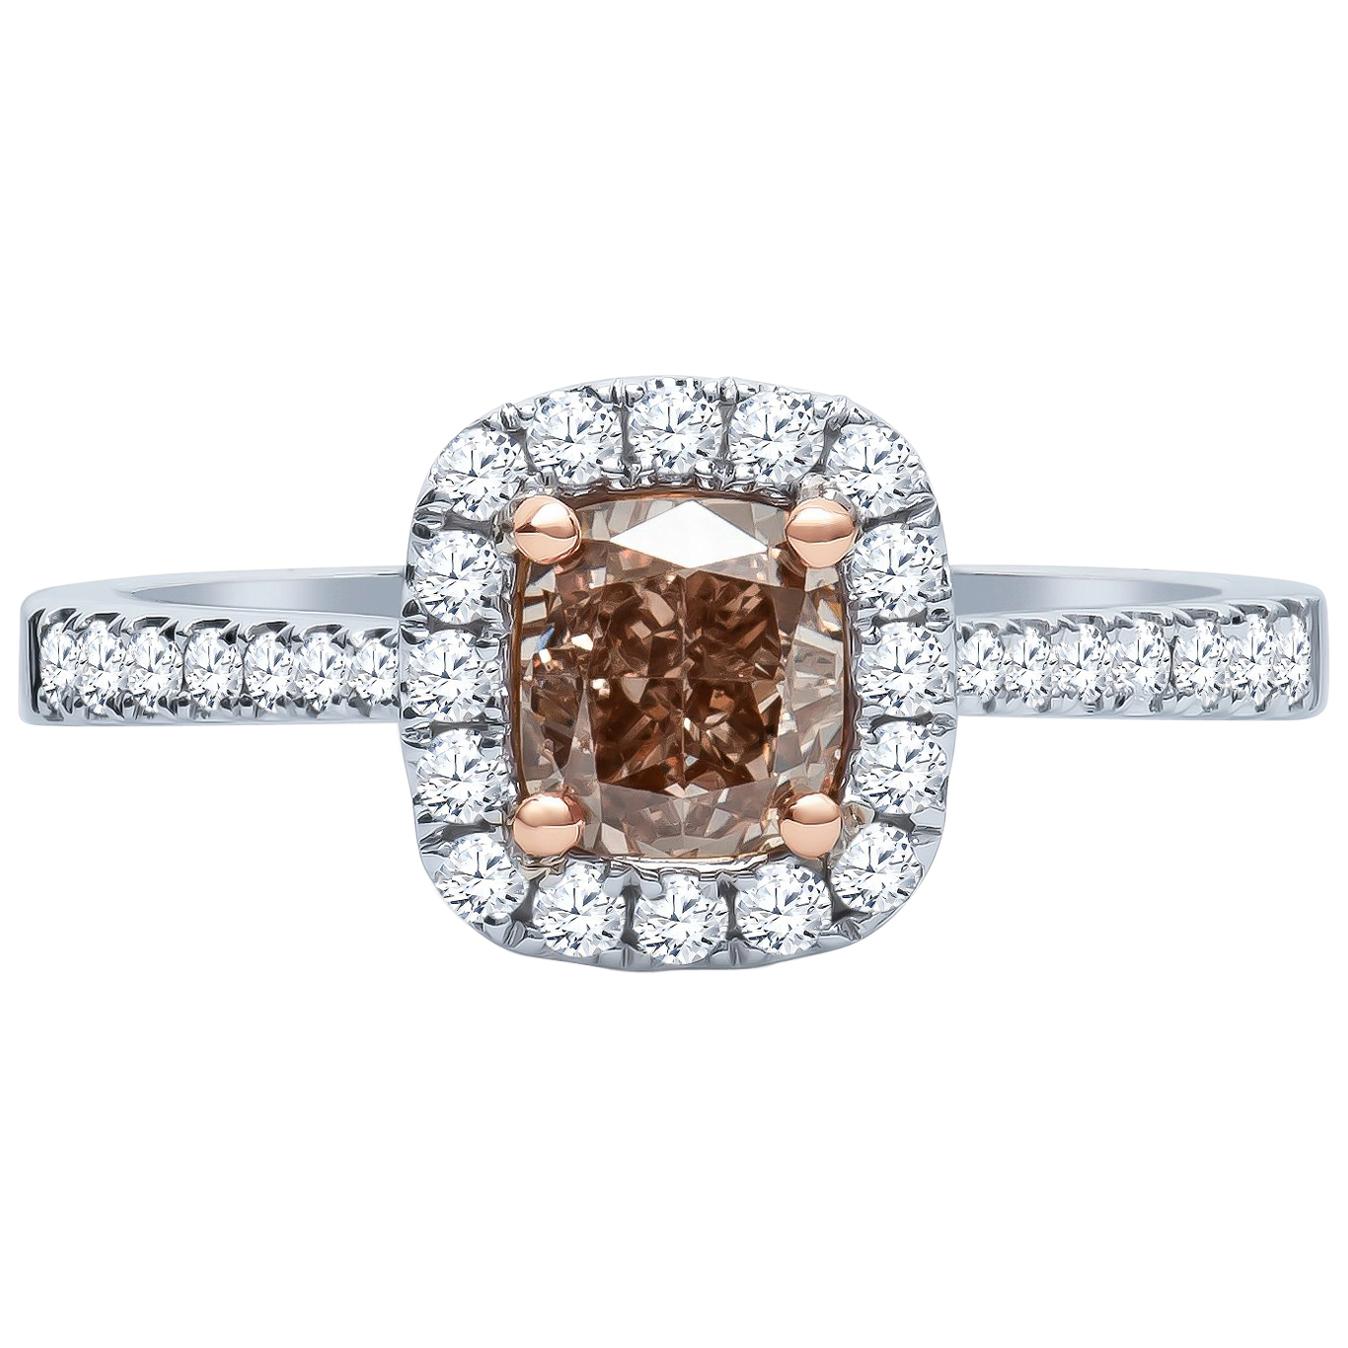 1.00 Carat 'GIA' SI1 Fancy Orange Brown Diamond Cathedral Engagement Ring